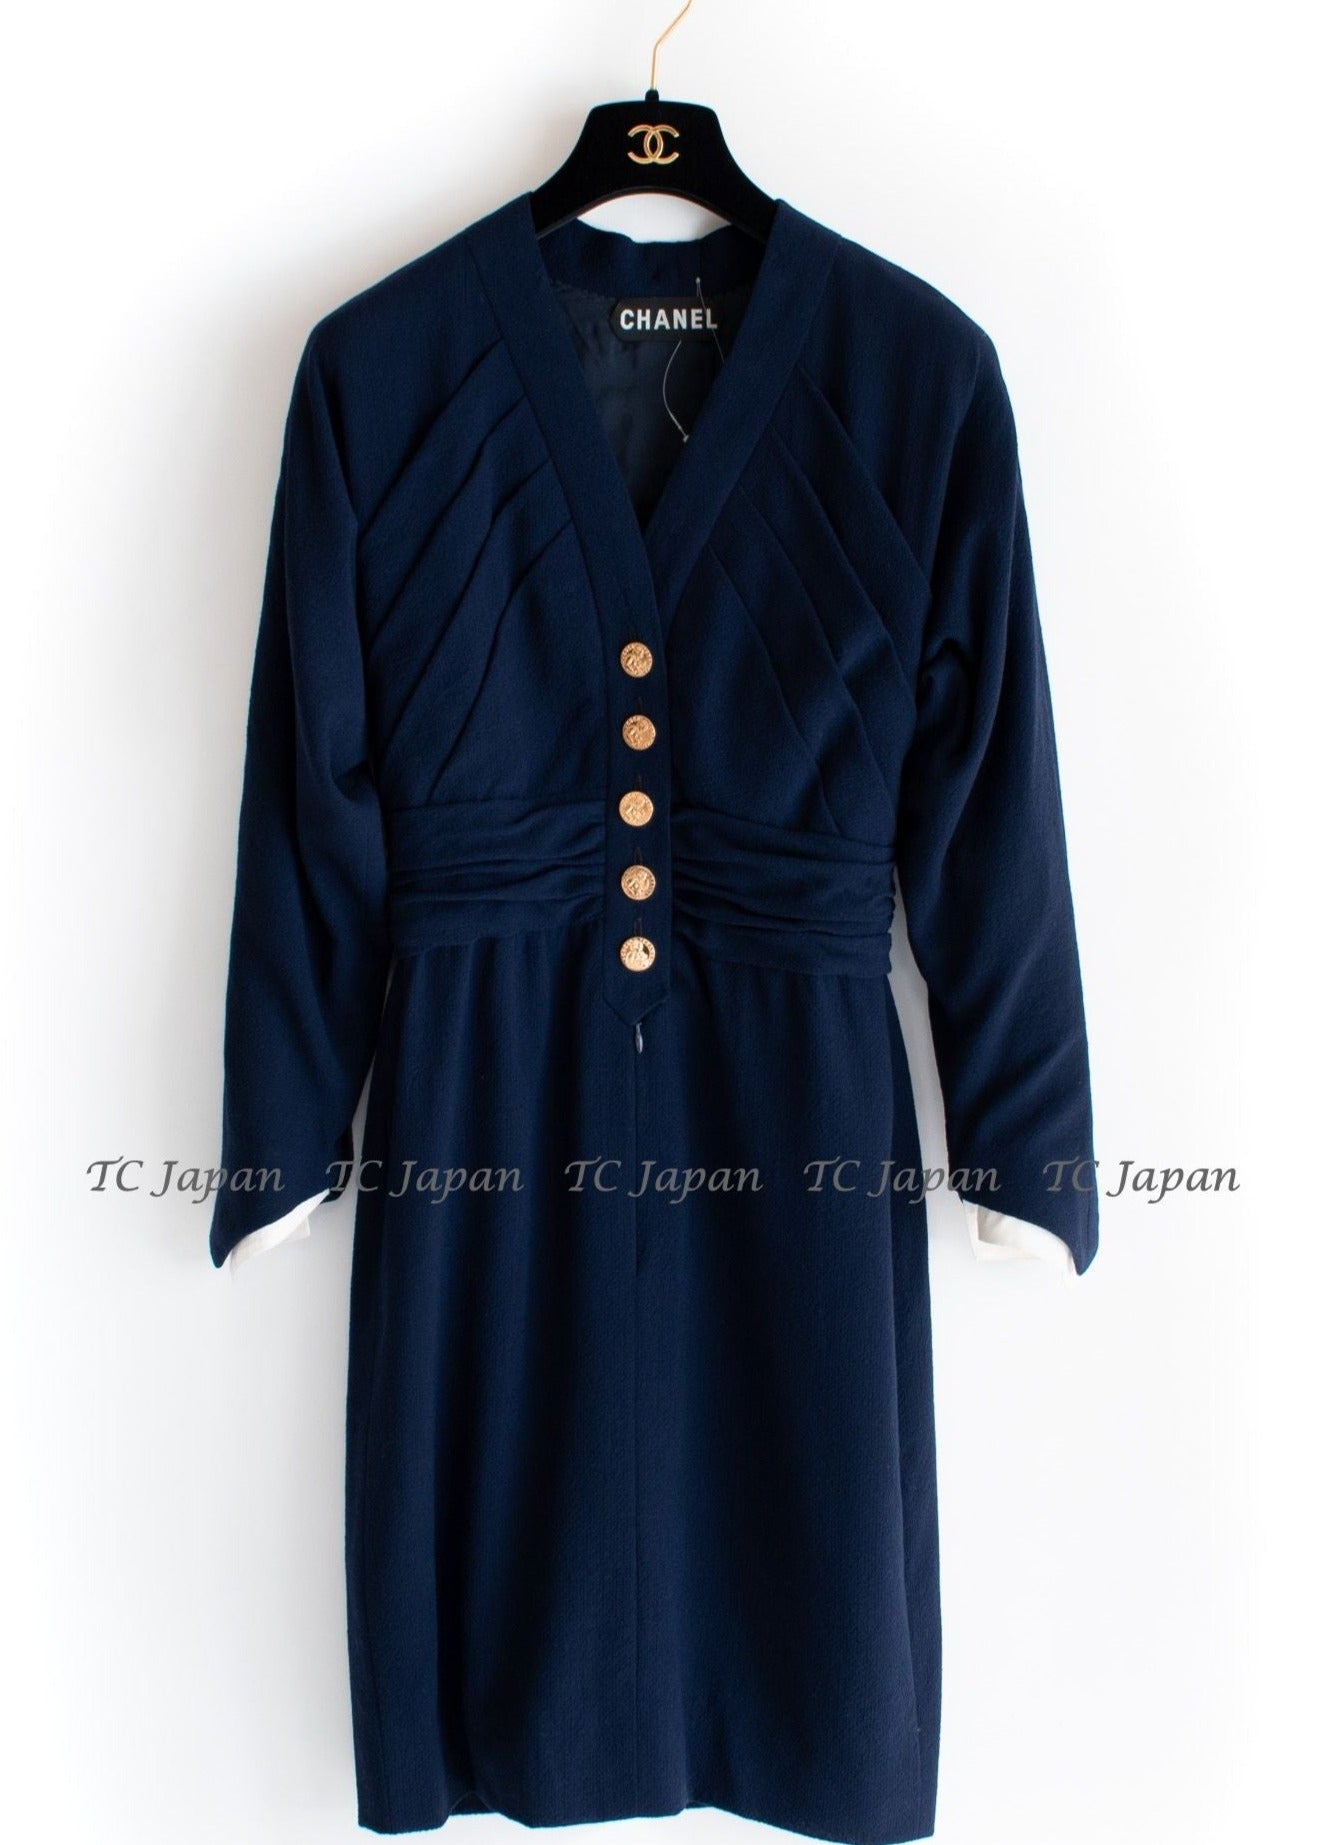 シャネル オートクチュール・ネイビー・ワンピース CHANEL Haute Couture Navy Dress – CHANEL TC JAPAN